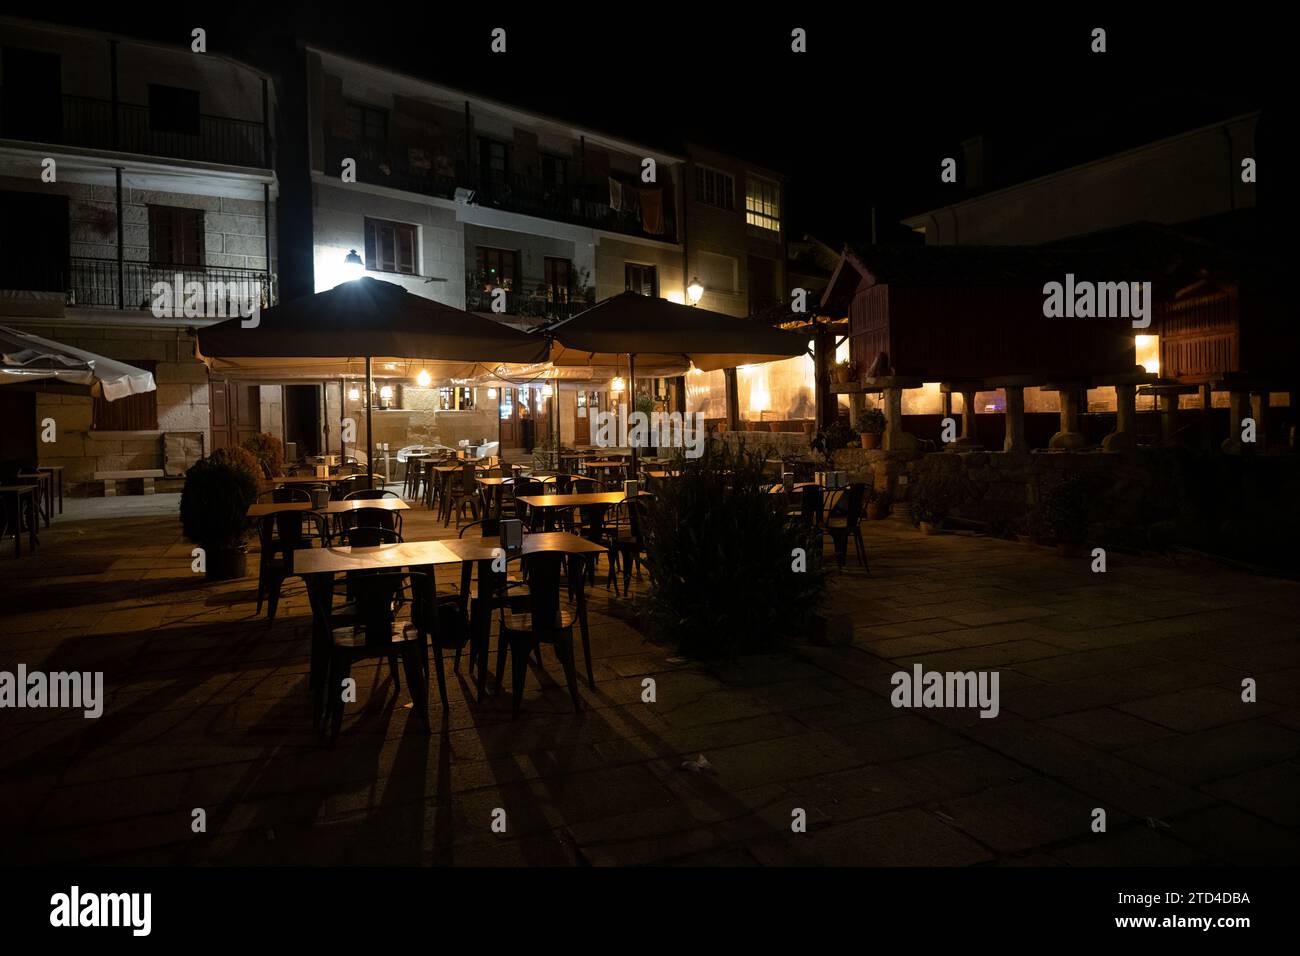 Gemütliches Restaurant im Freien bei Nacht mit beleuchteten Sonnenschirmen und leeren Tischen, einladendes Ambiente in ruhiger urbaner Umgebung. Stockfoto